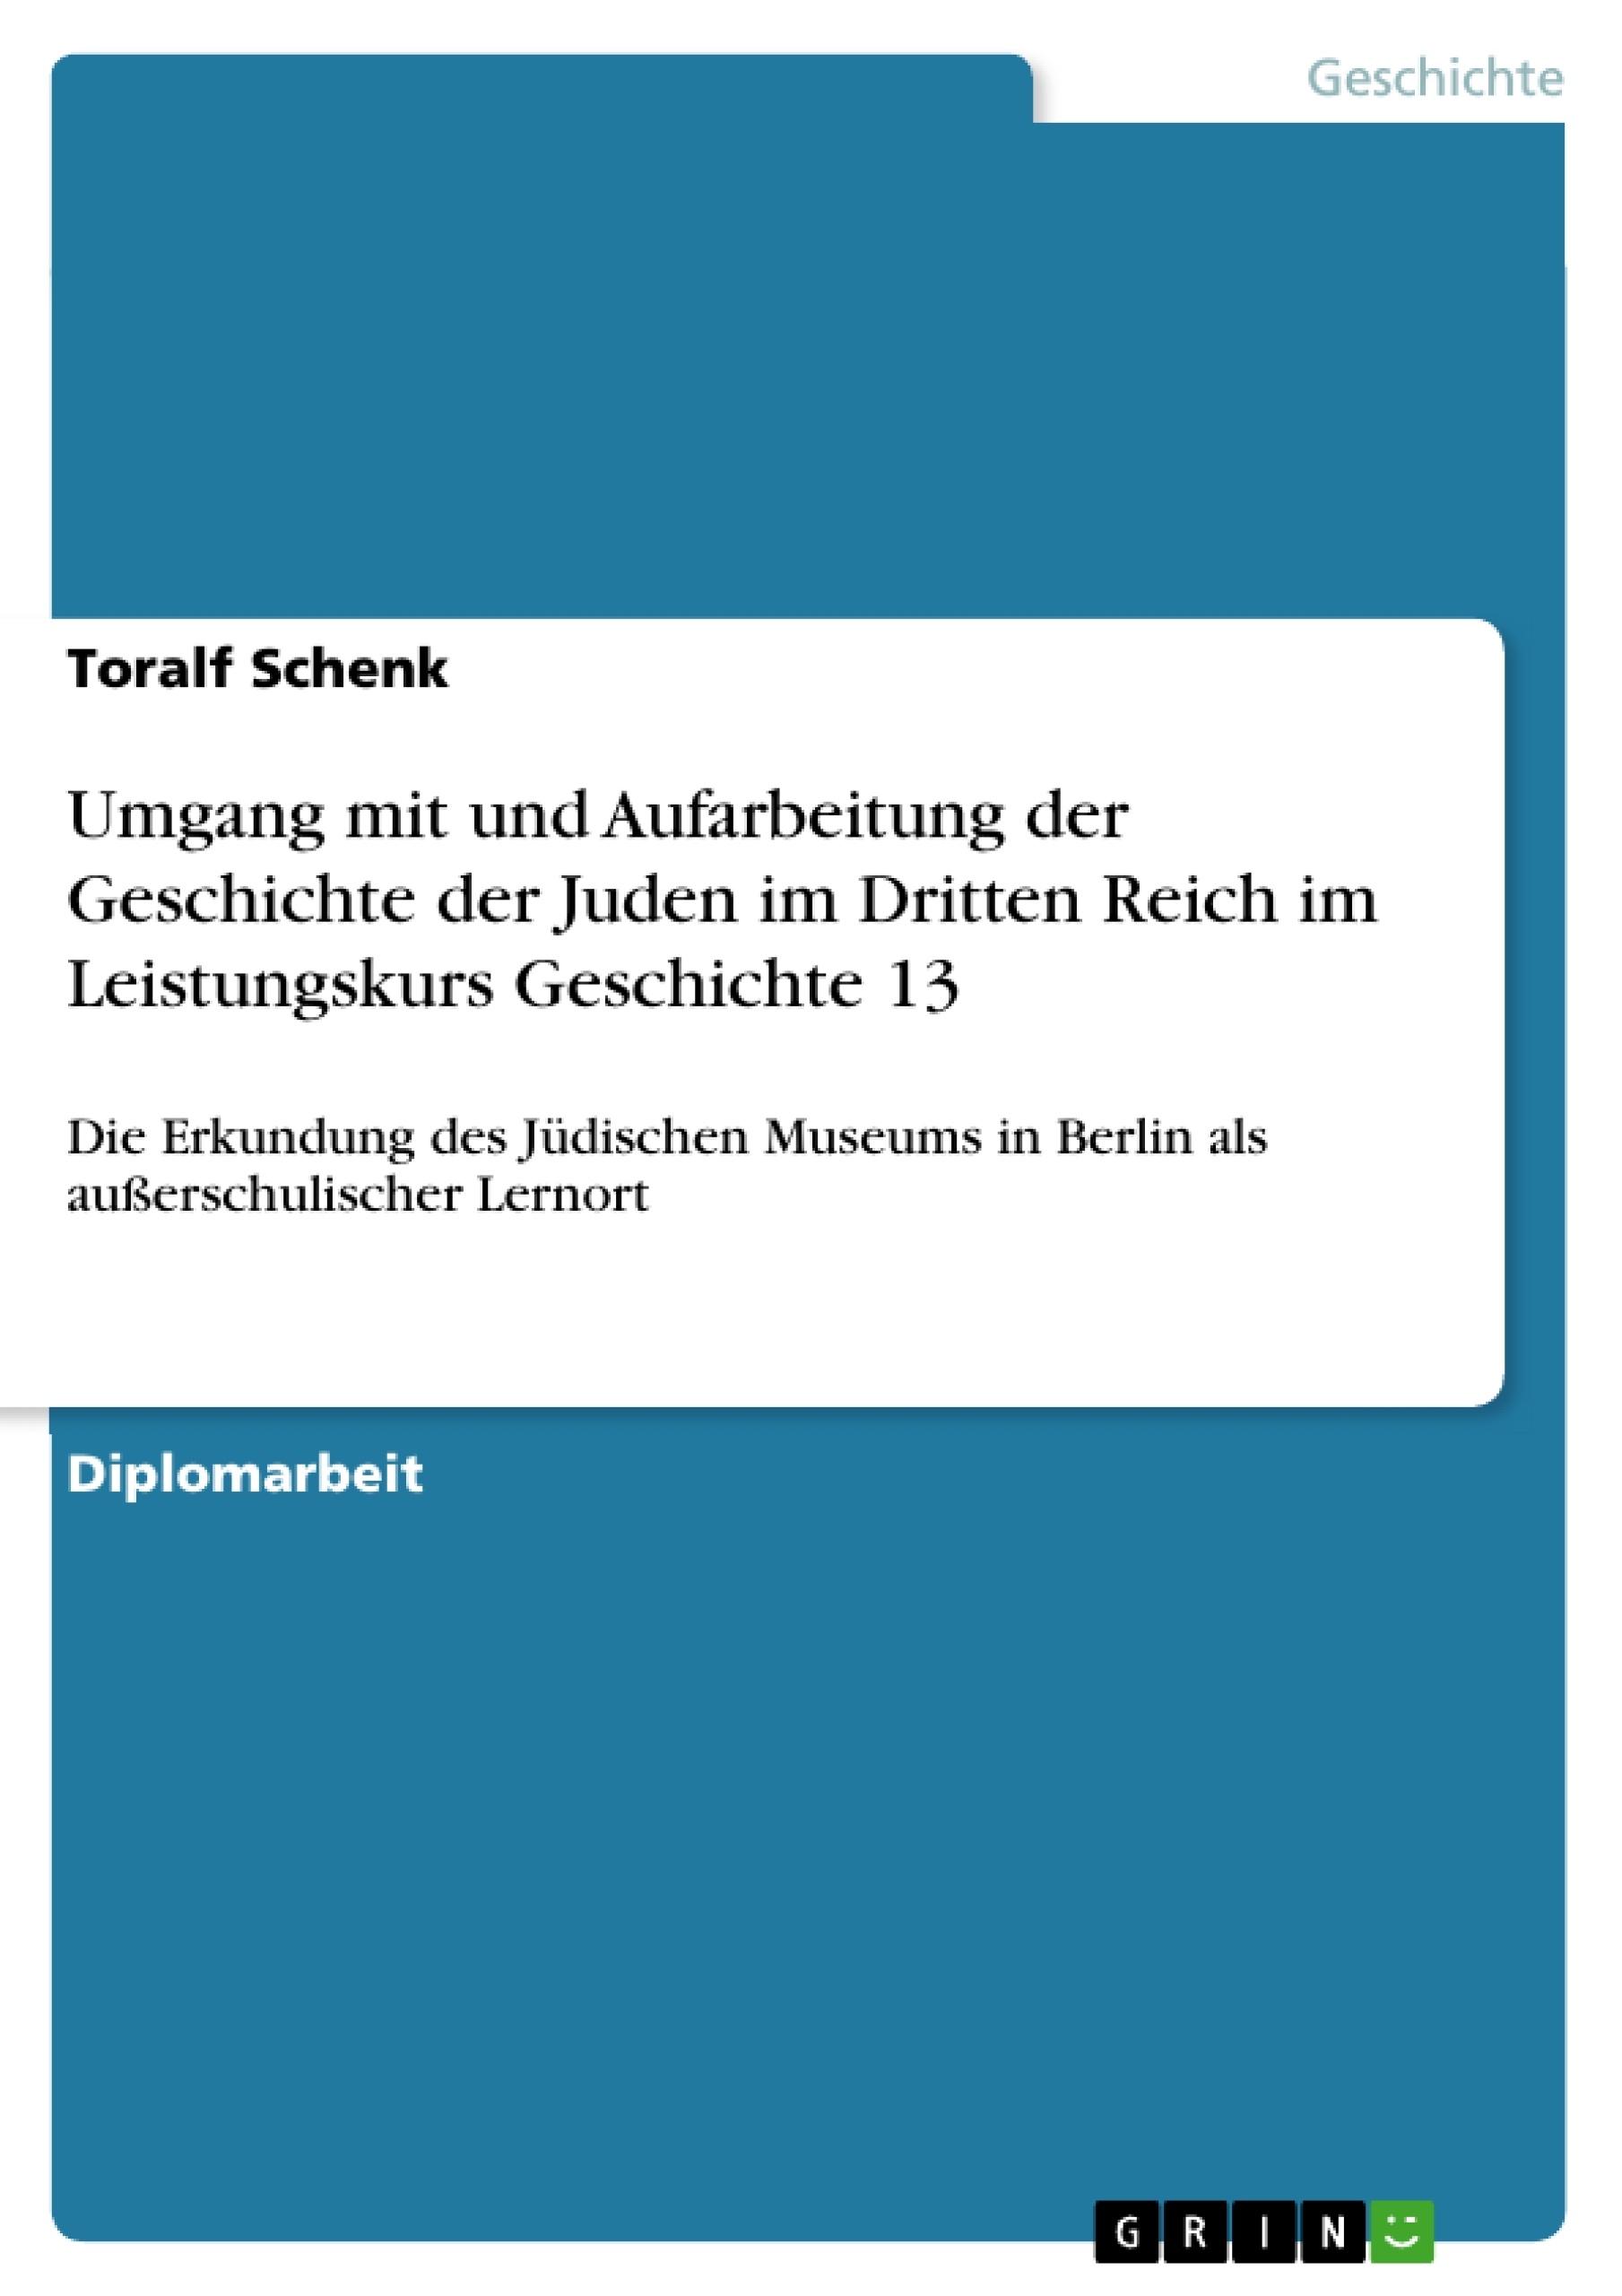 Titel: Umgang mit und Aufarbeitung der Geschichte der Juden im Dritten Reich im Leistungskurs Geschichte 13